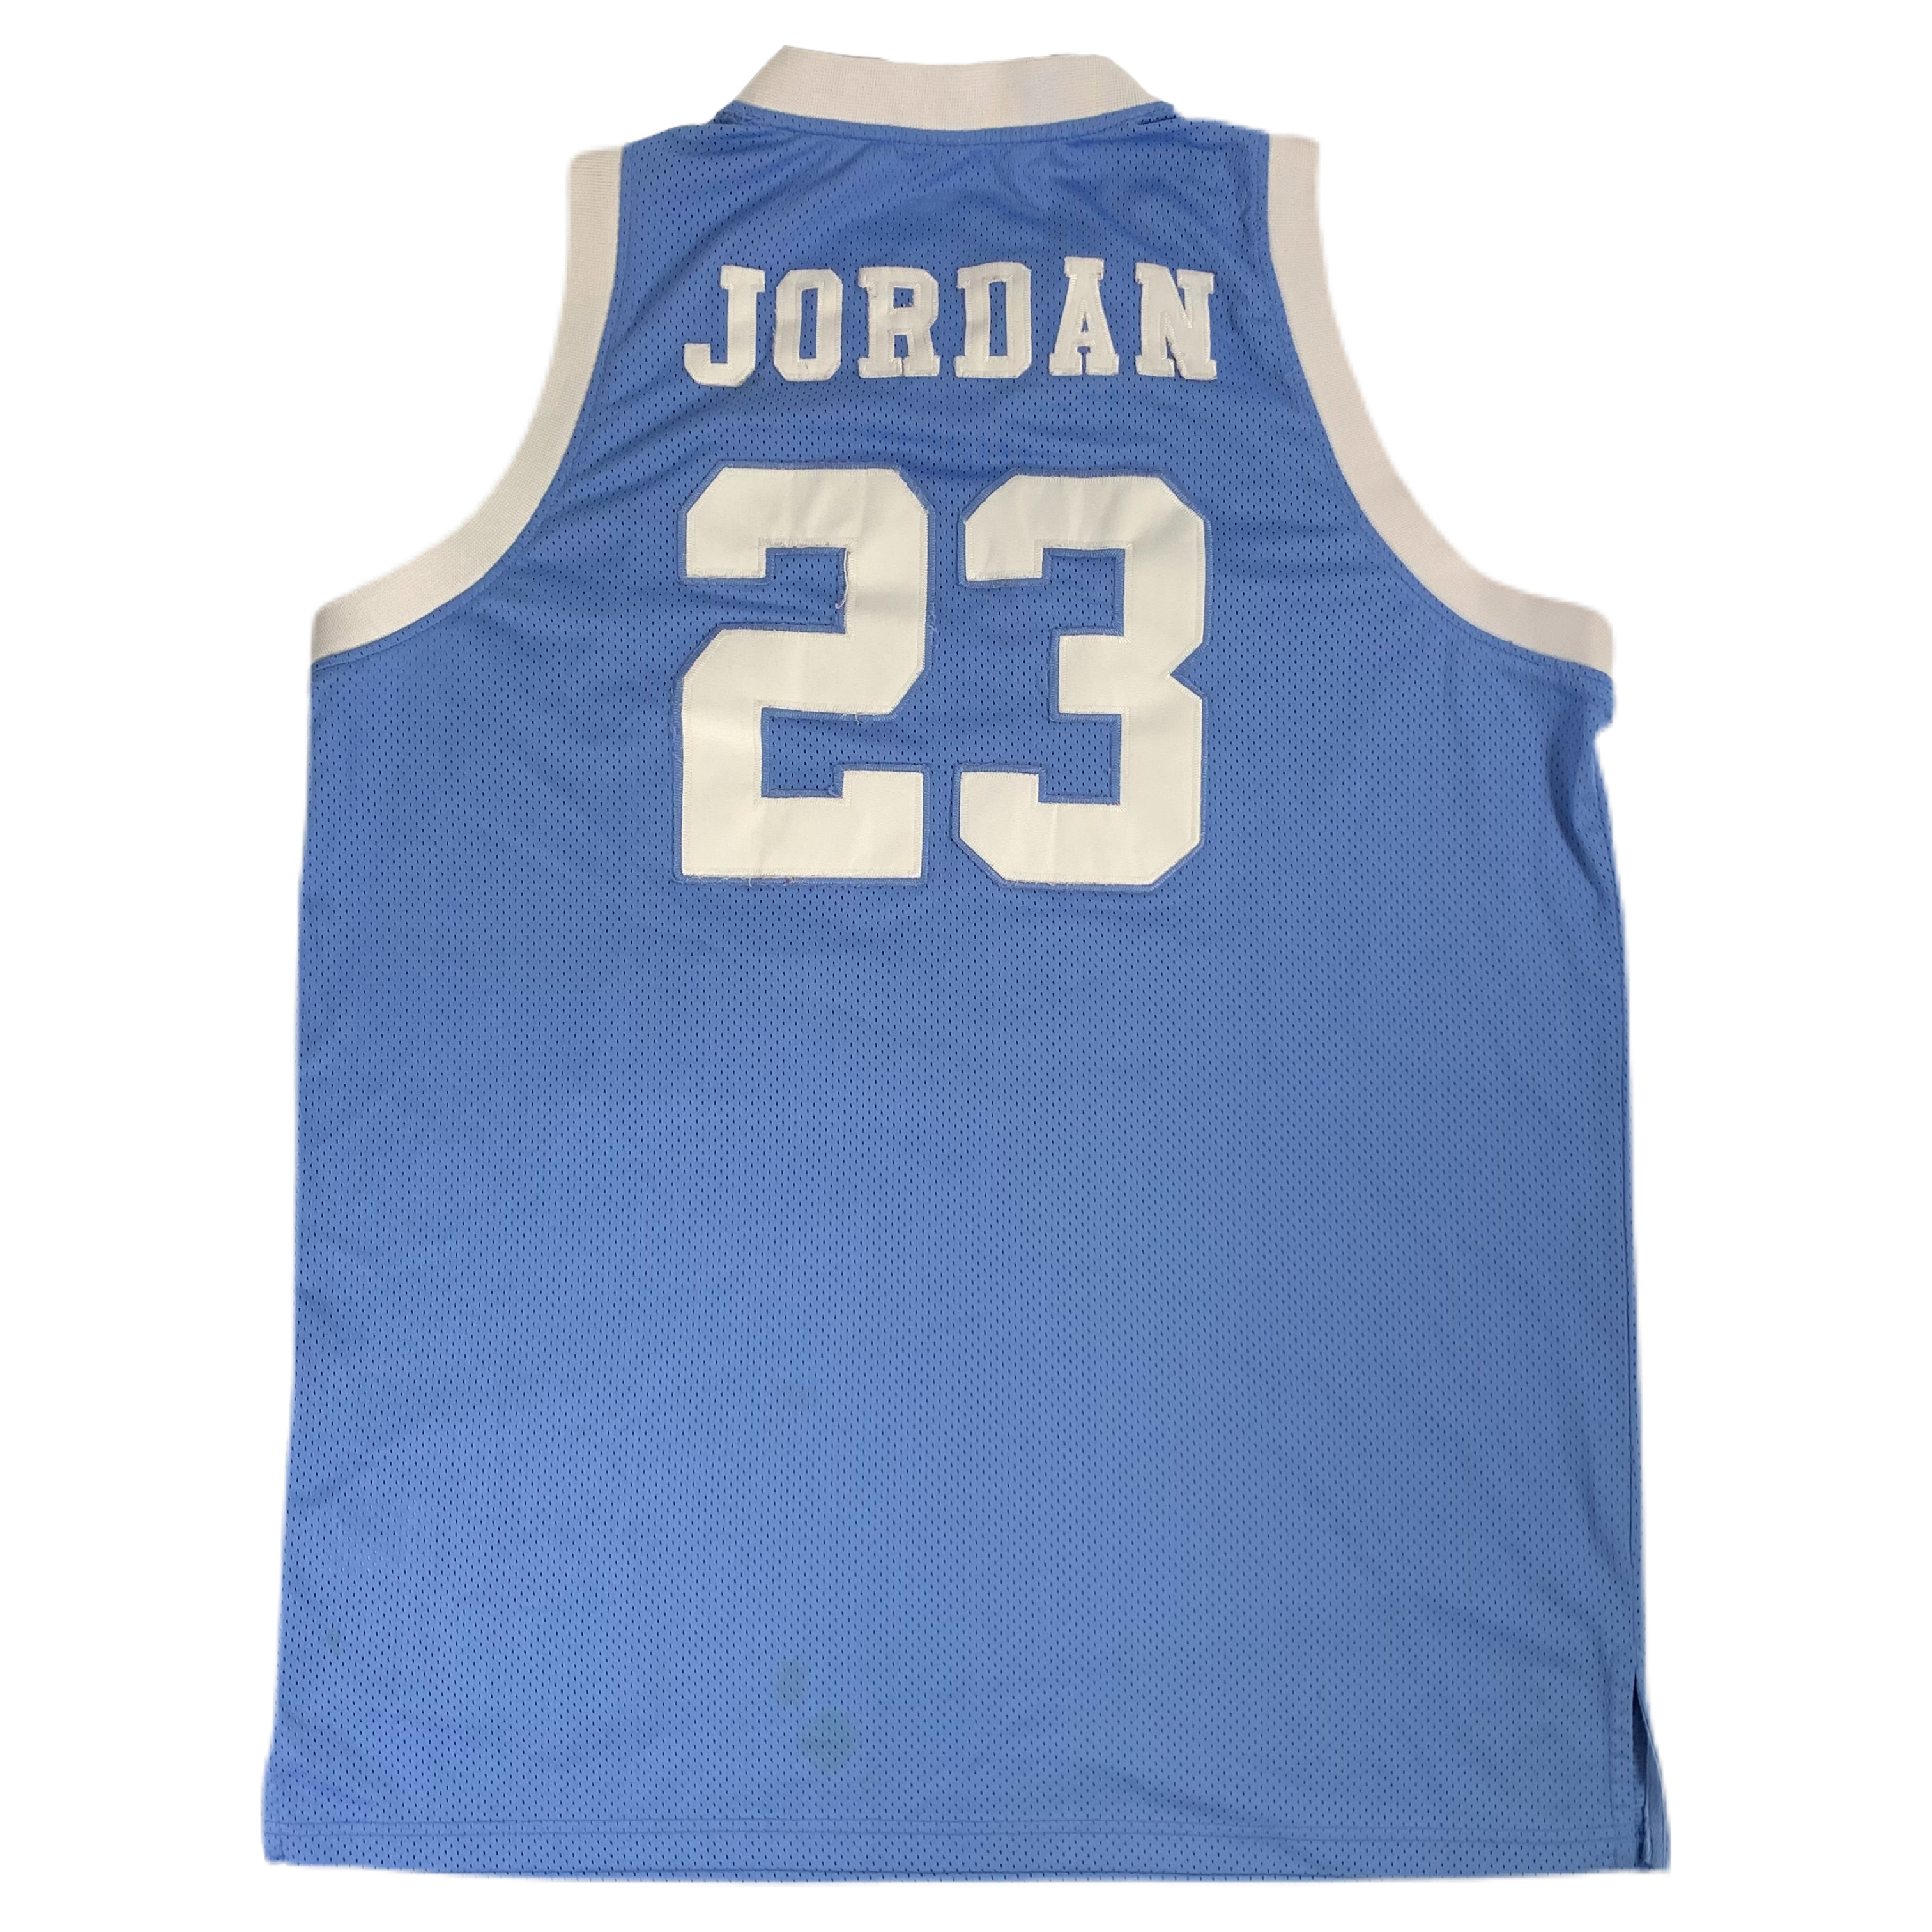 UNC Michael Jordan Jersey, North Carolina Tar Heels Michael Jordan